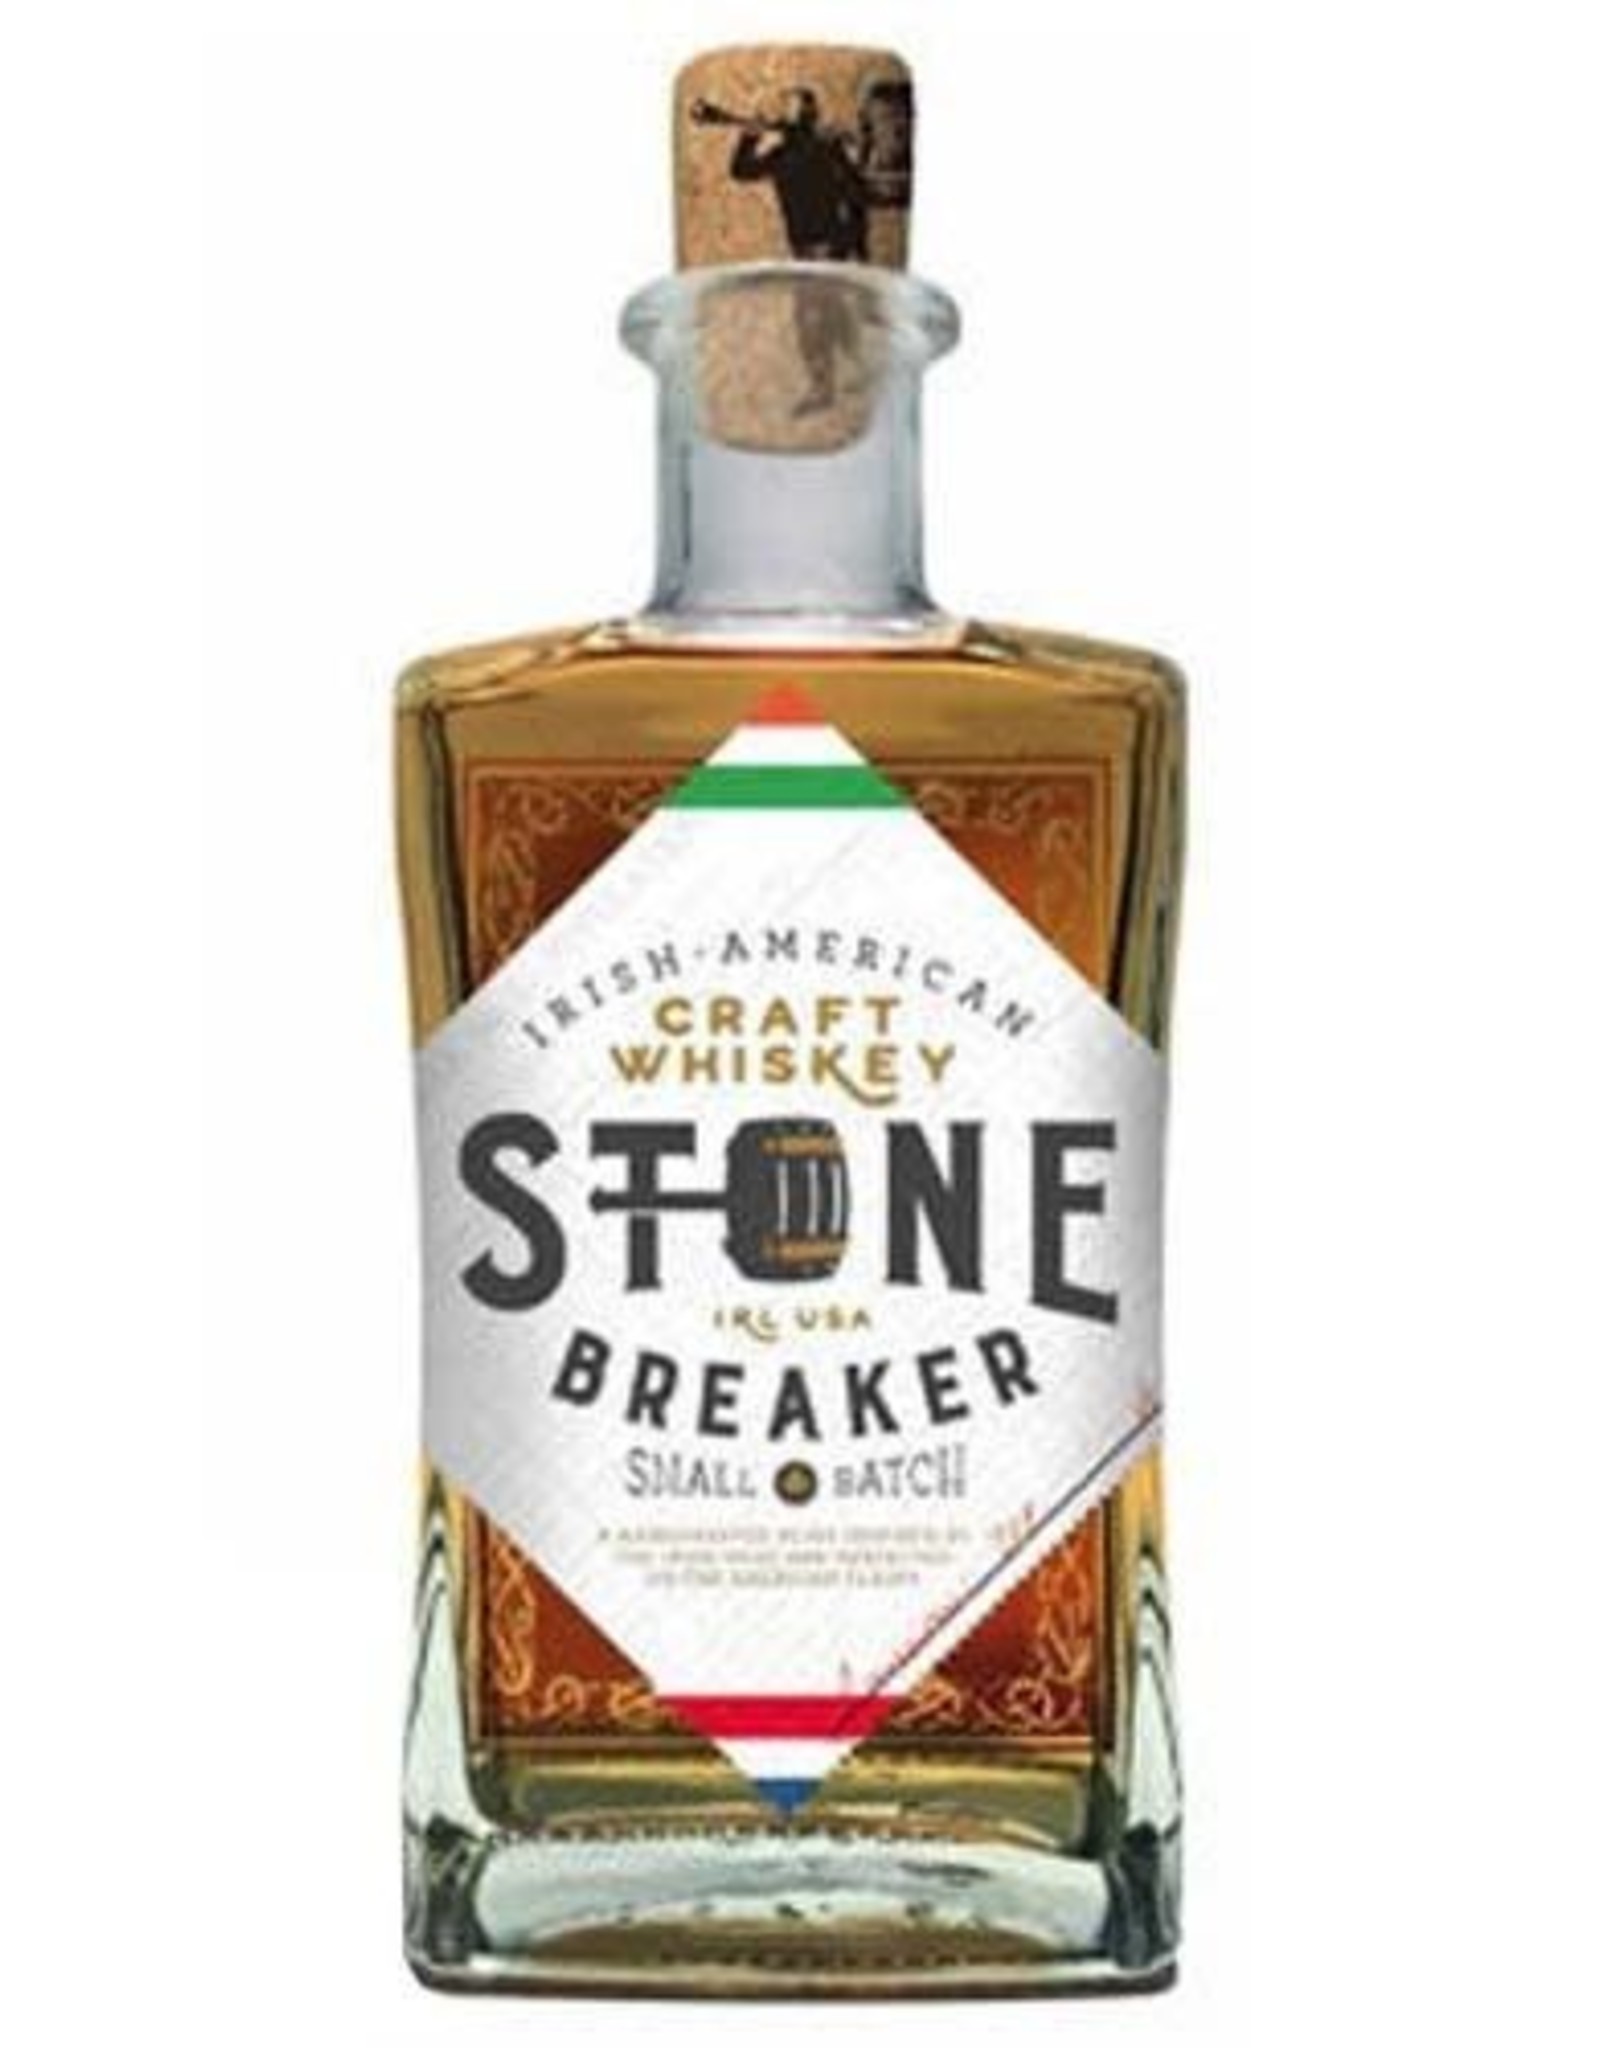 Stone Breaker. Stone Breaker IRL & USA Blended Whiskey 750 mL